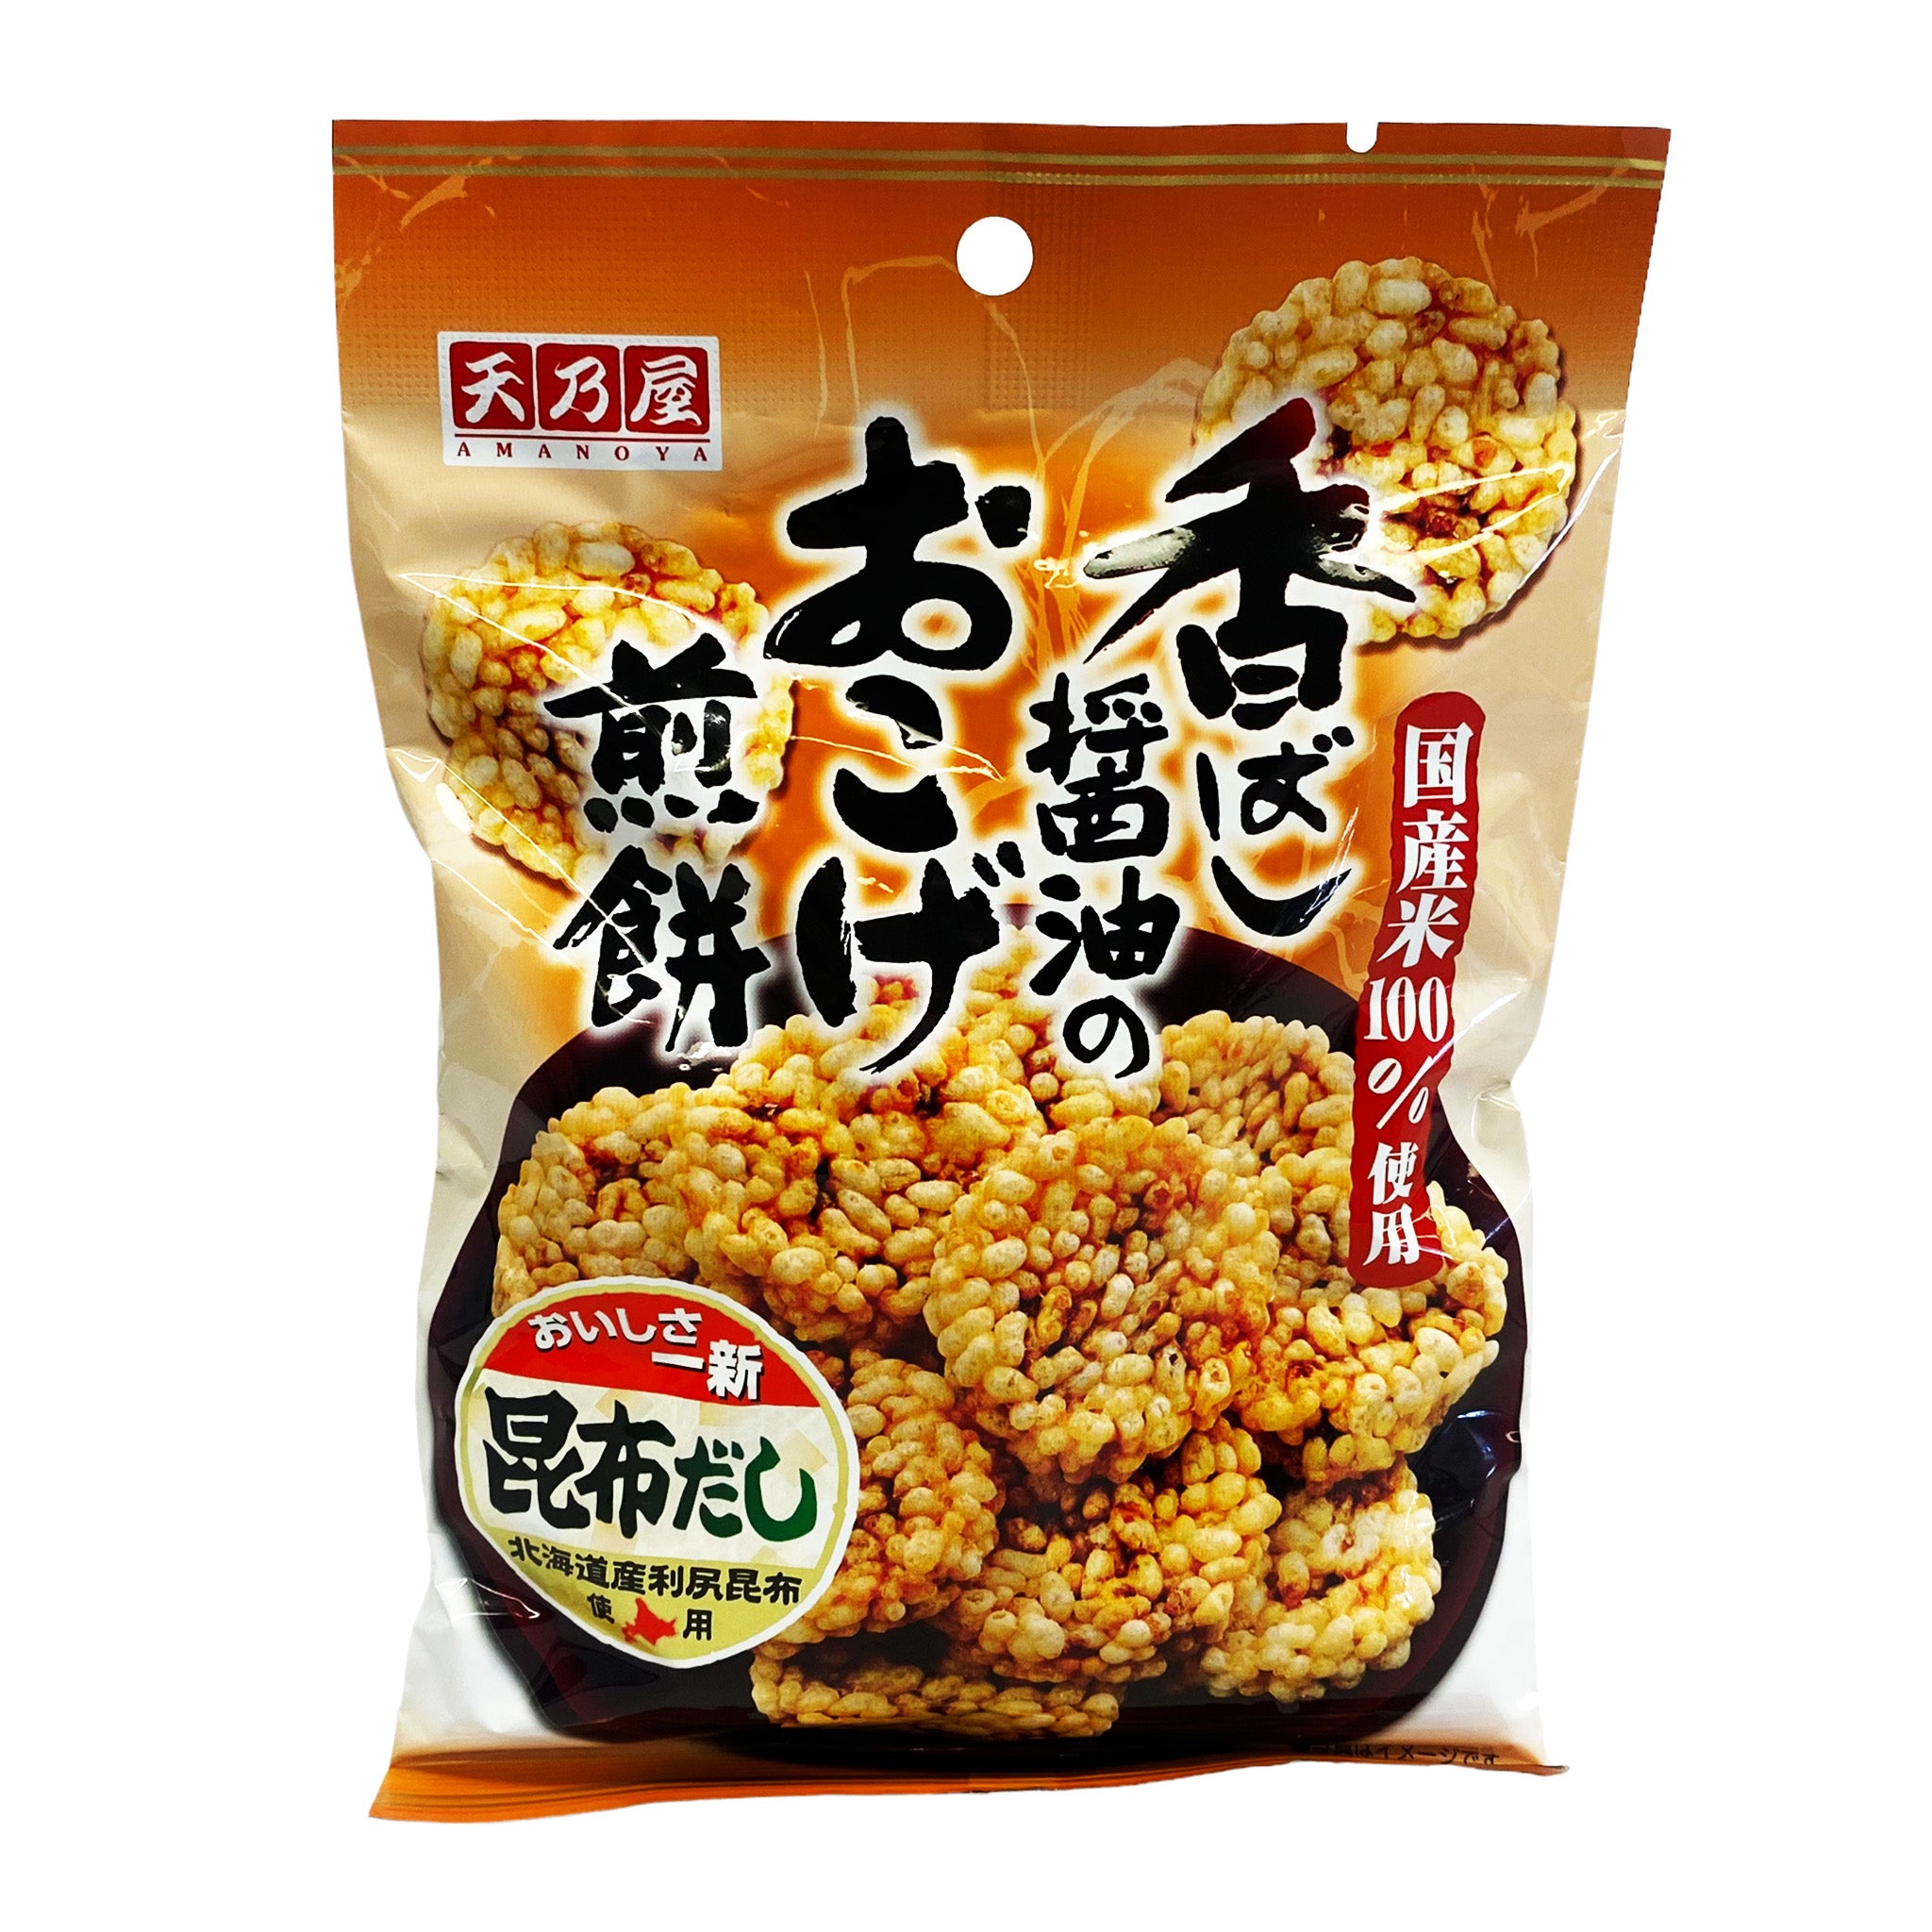 Amanoya Japanese Baked Rice Cracker Kobashi Shoyu no Okoge Senbei 1